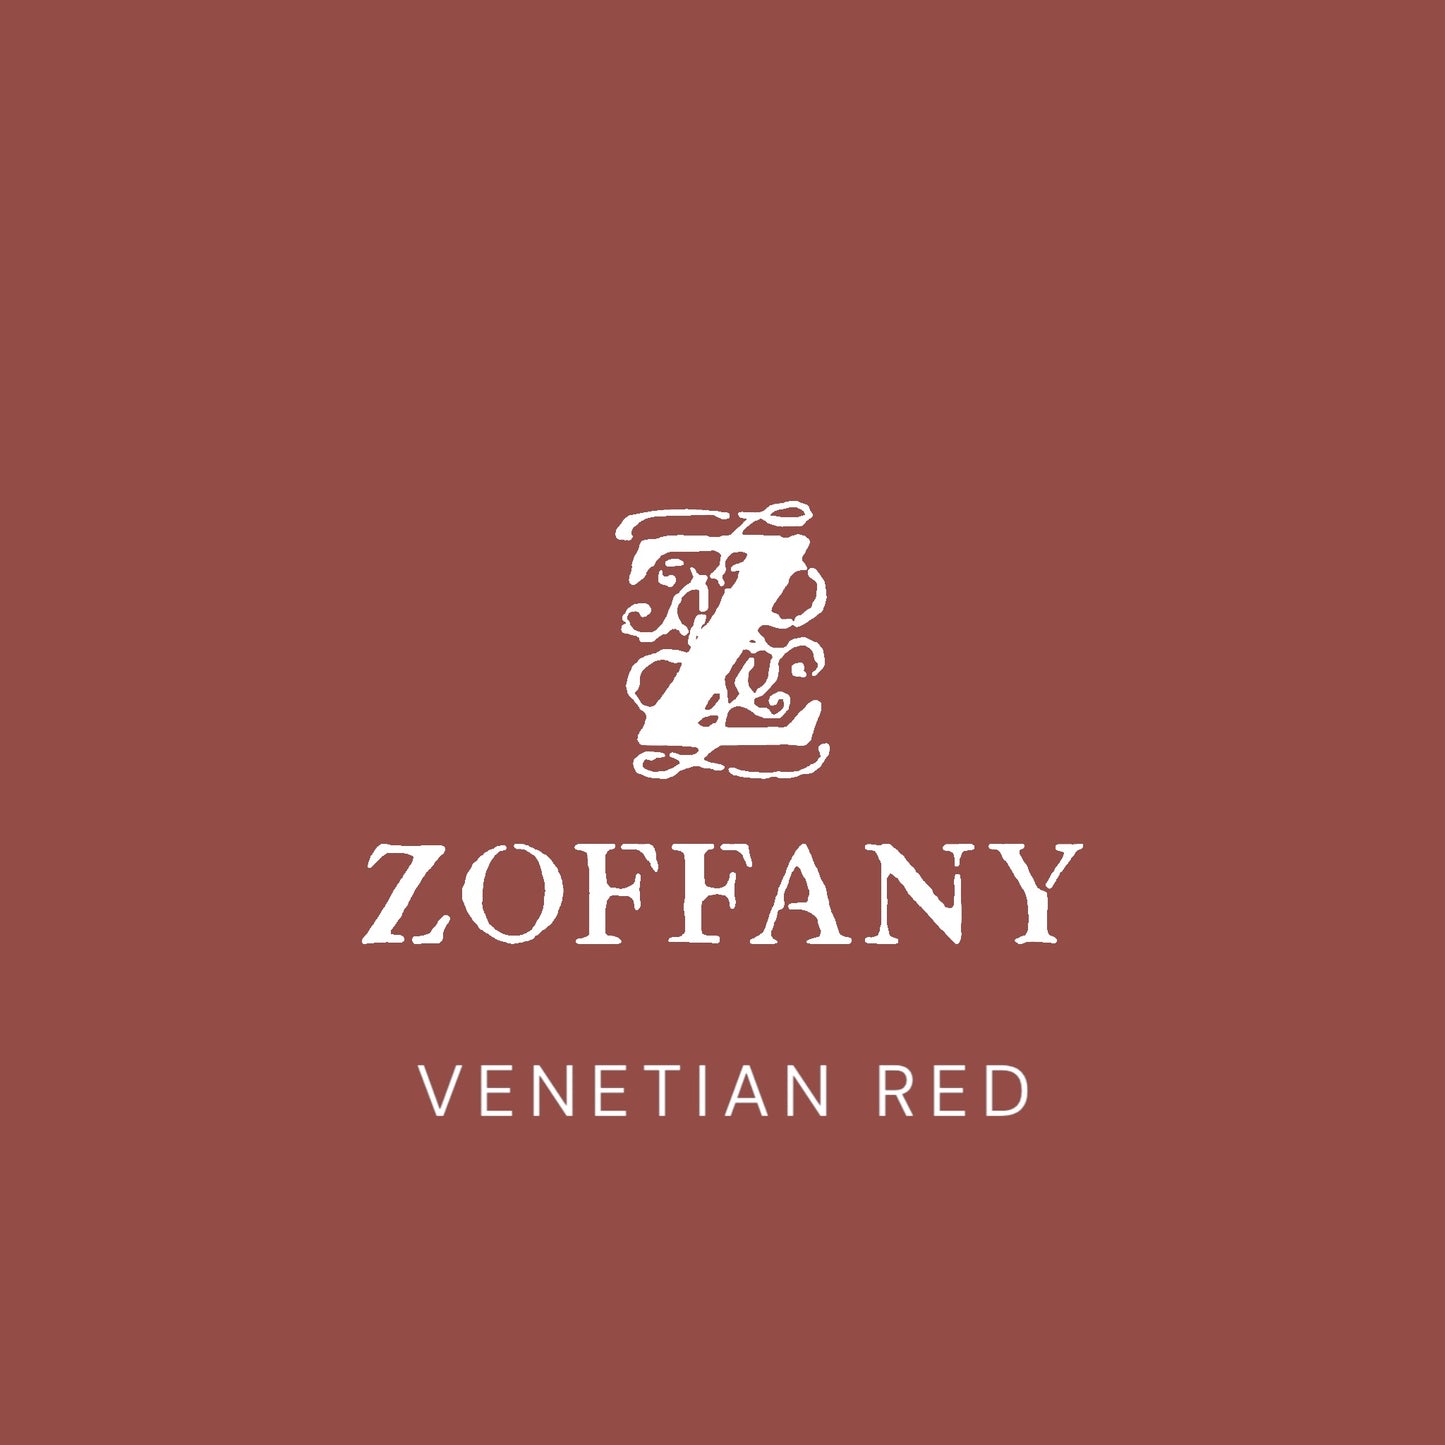 Zoffany's Venetian Red Paint